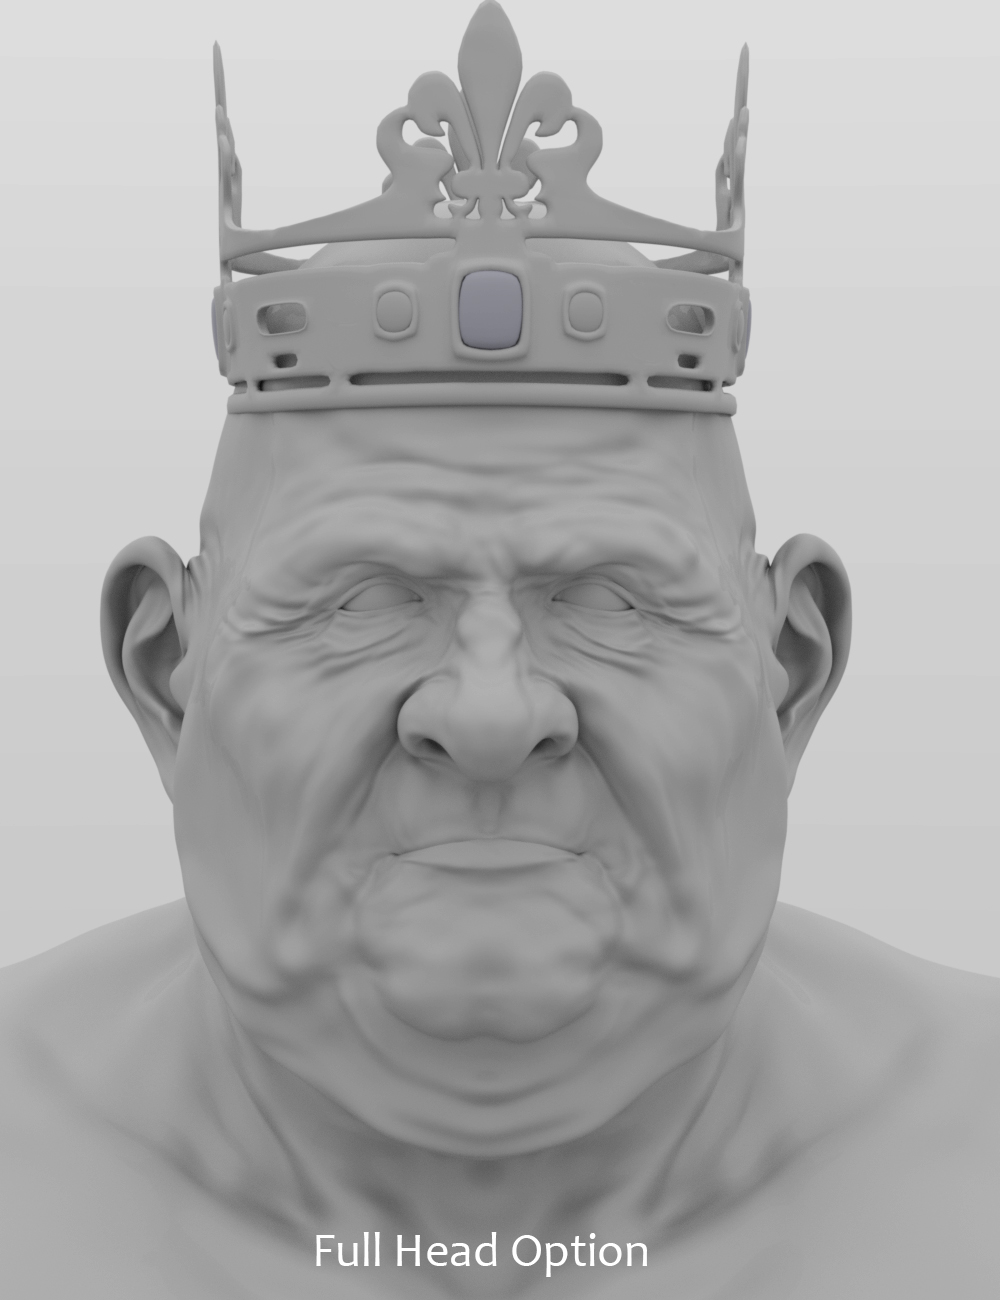 King George HD for Genesis 8 Male by: Deepsea, 3D Models by Daz 3D